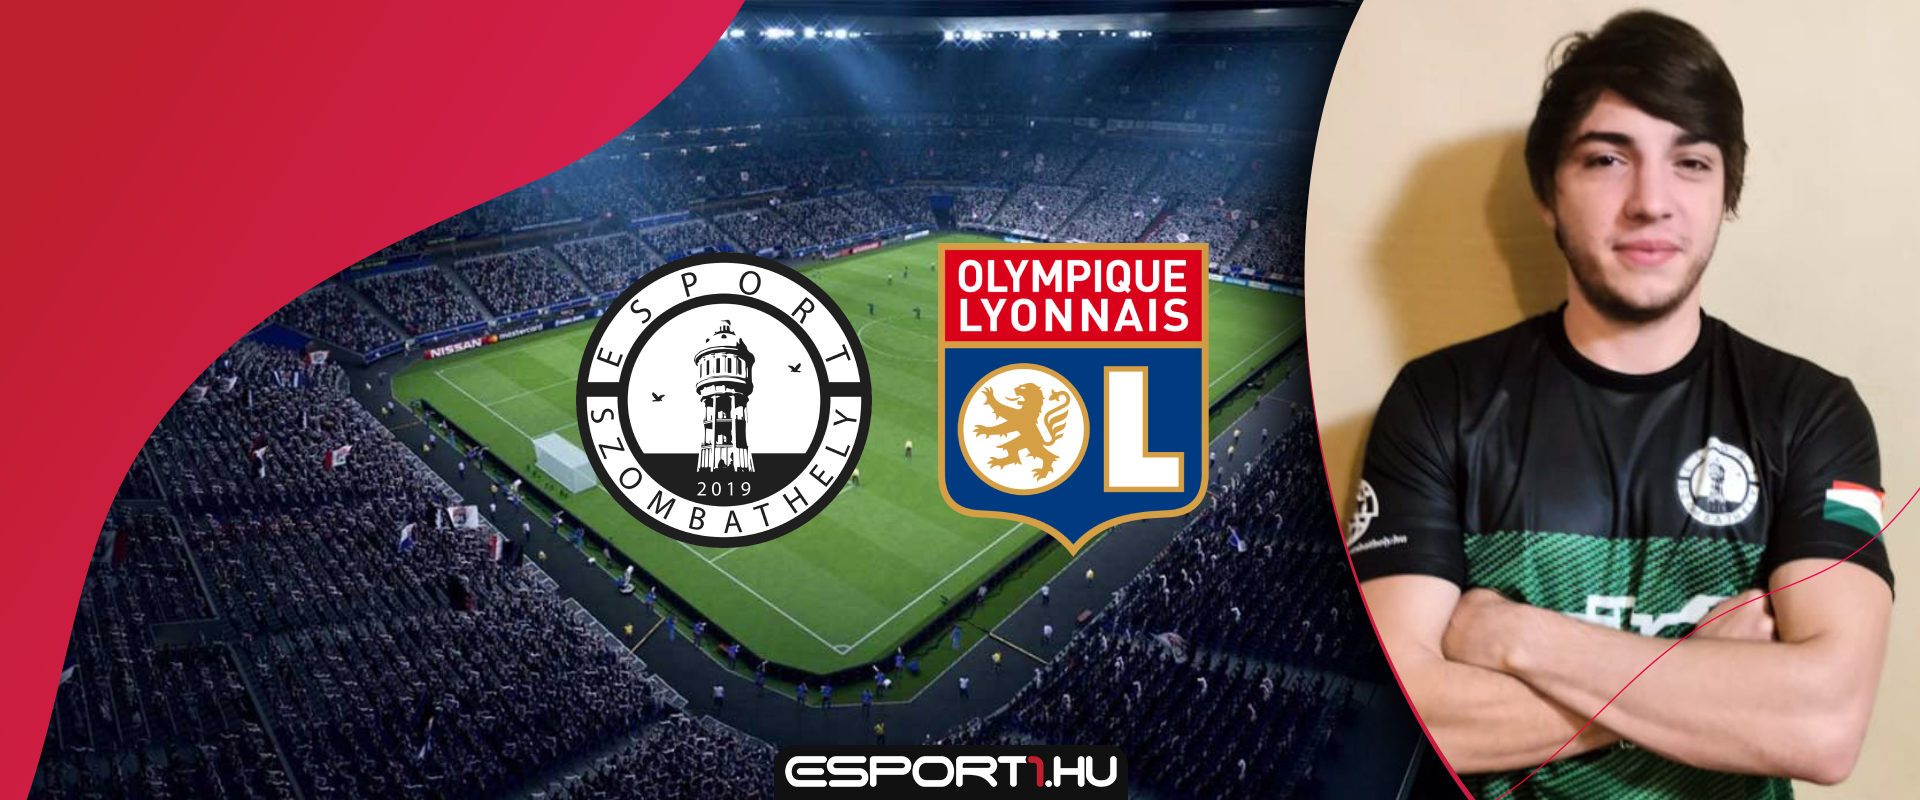 Magyar játékos a Lyon FIFA verseny döntőjében, ahol a győzelem, szerződést ér